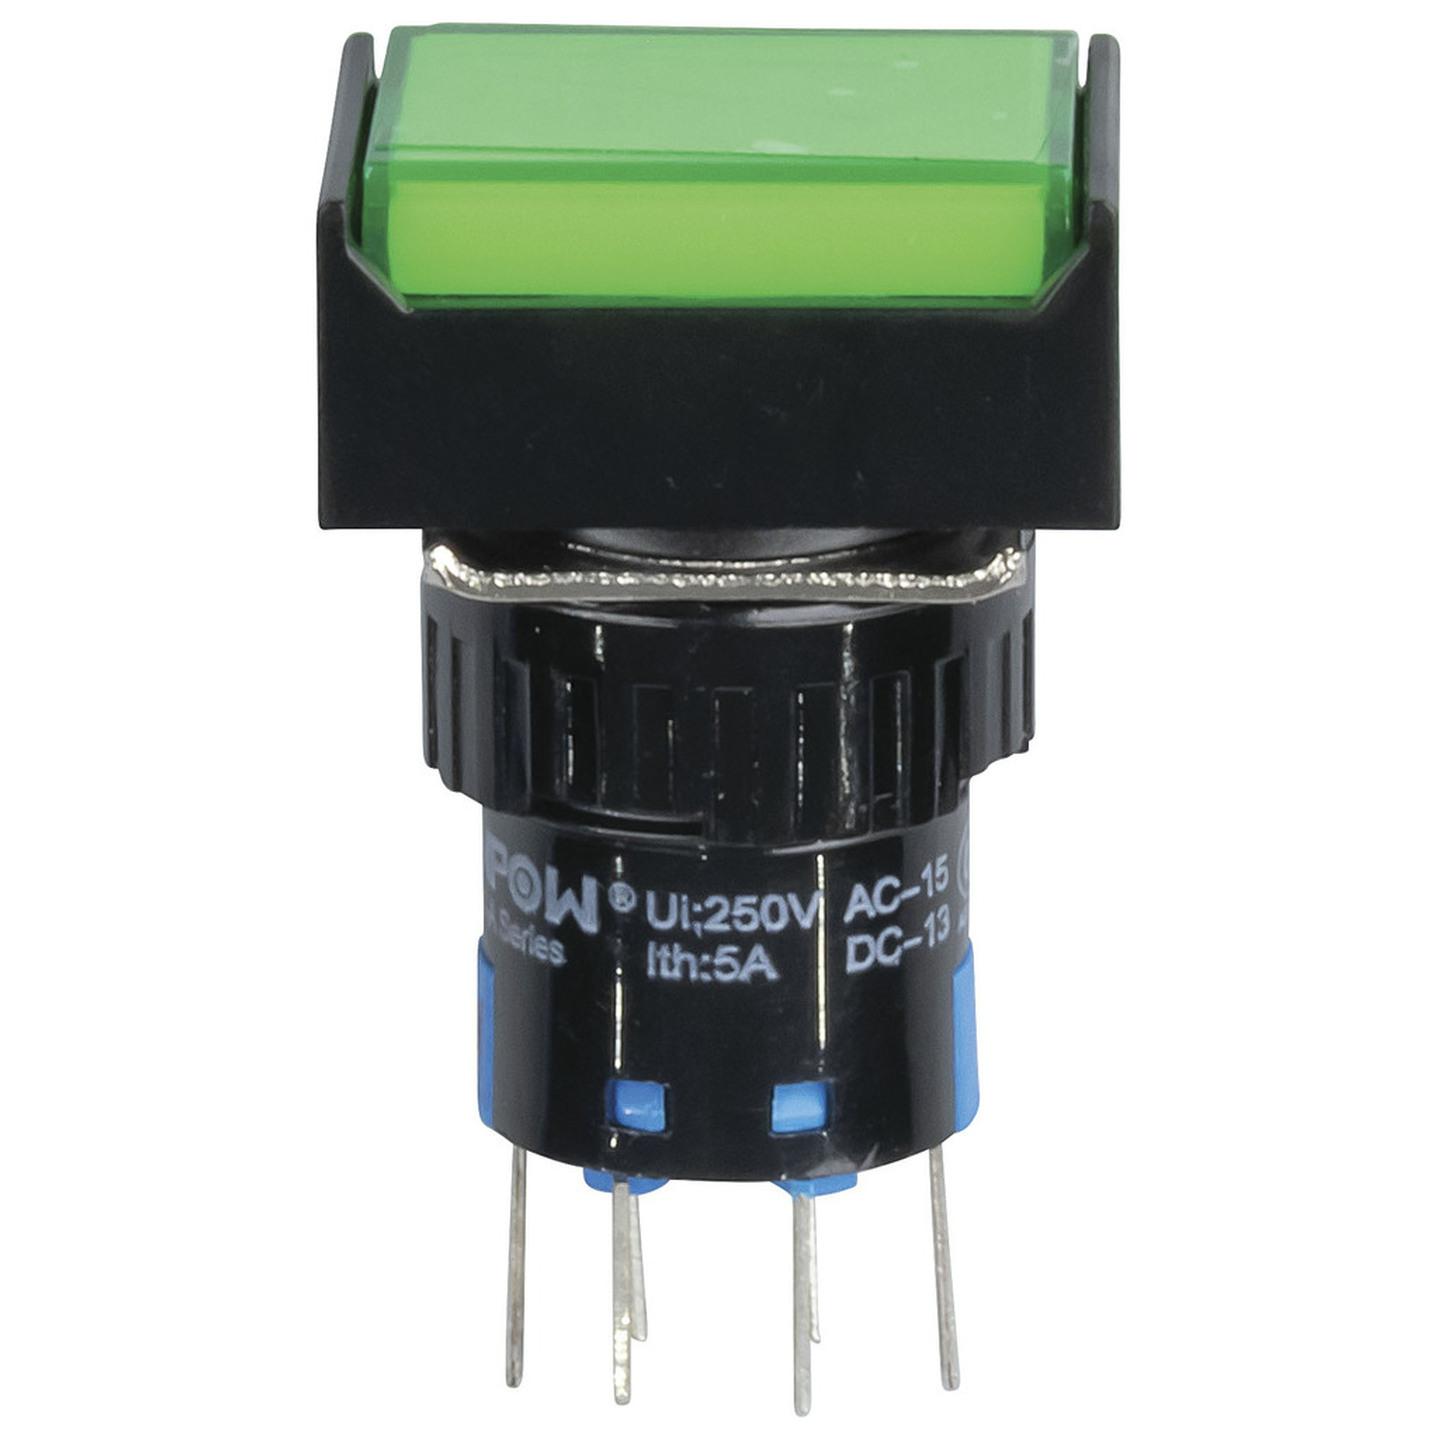 DPDT Illuminated Pushbutton IP65 Green